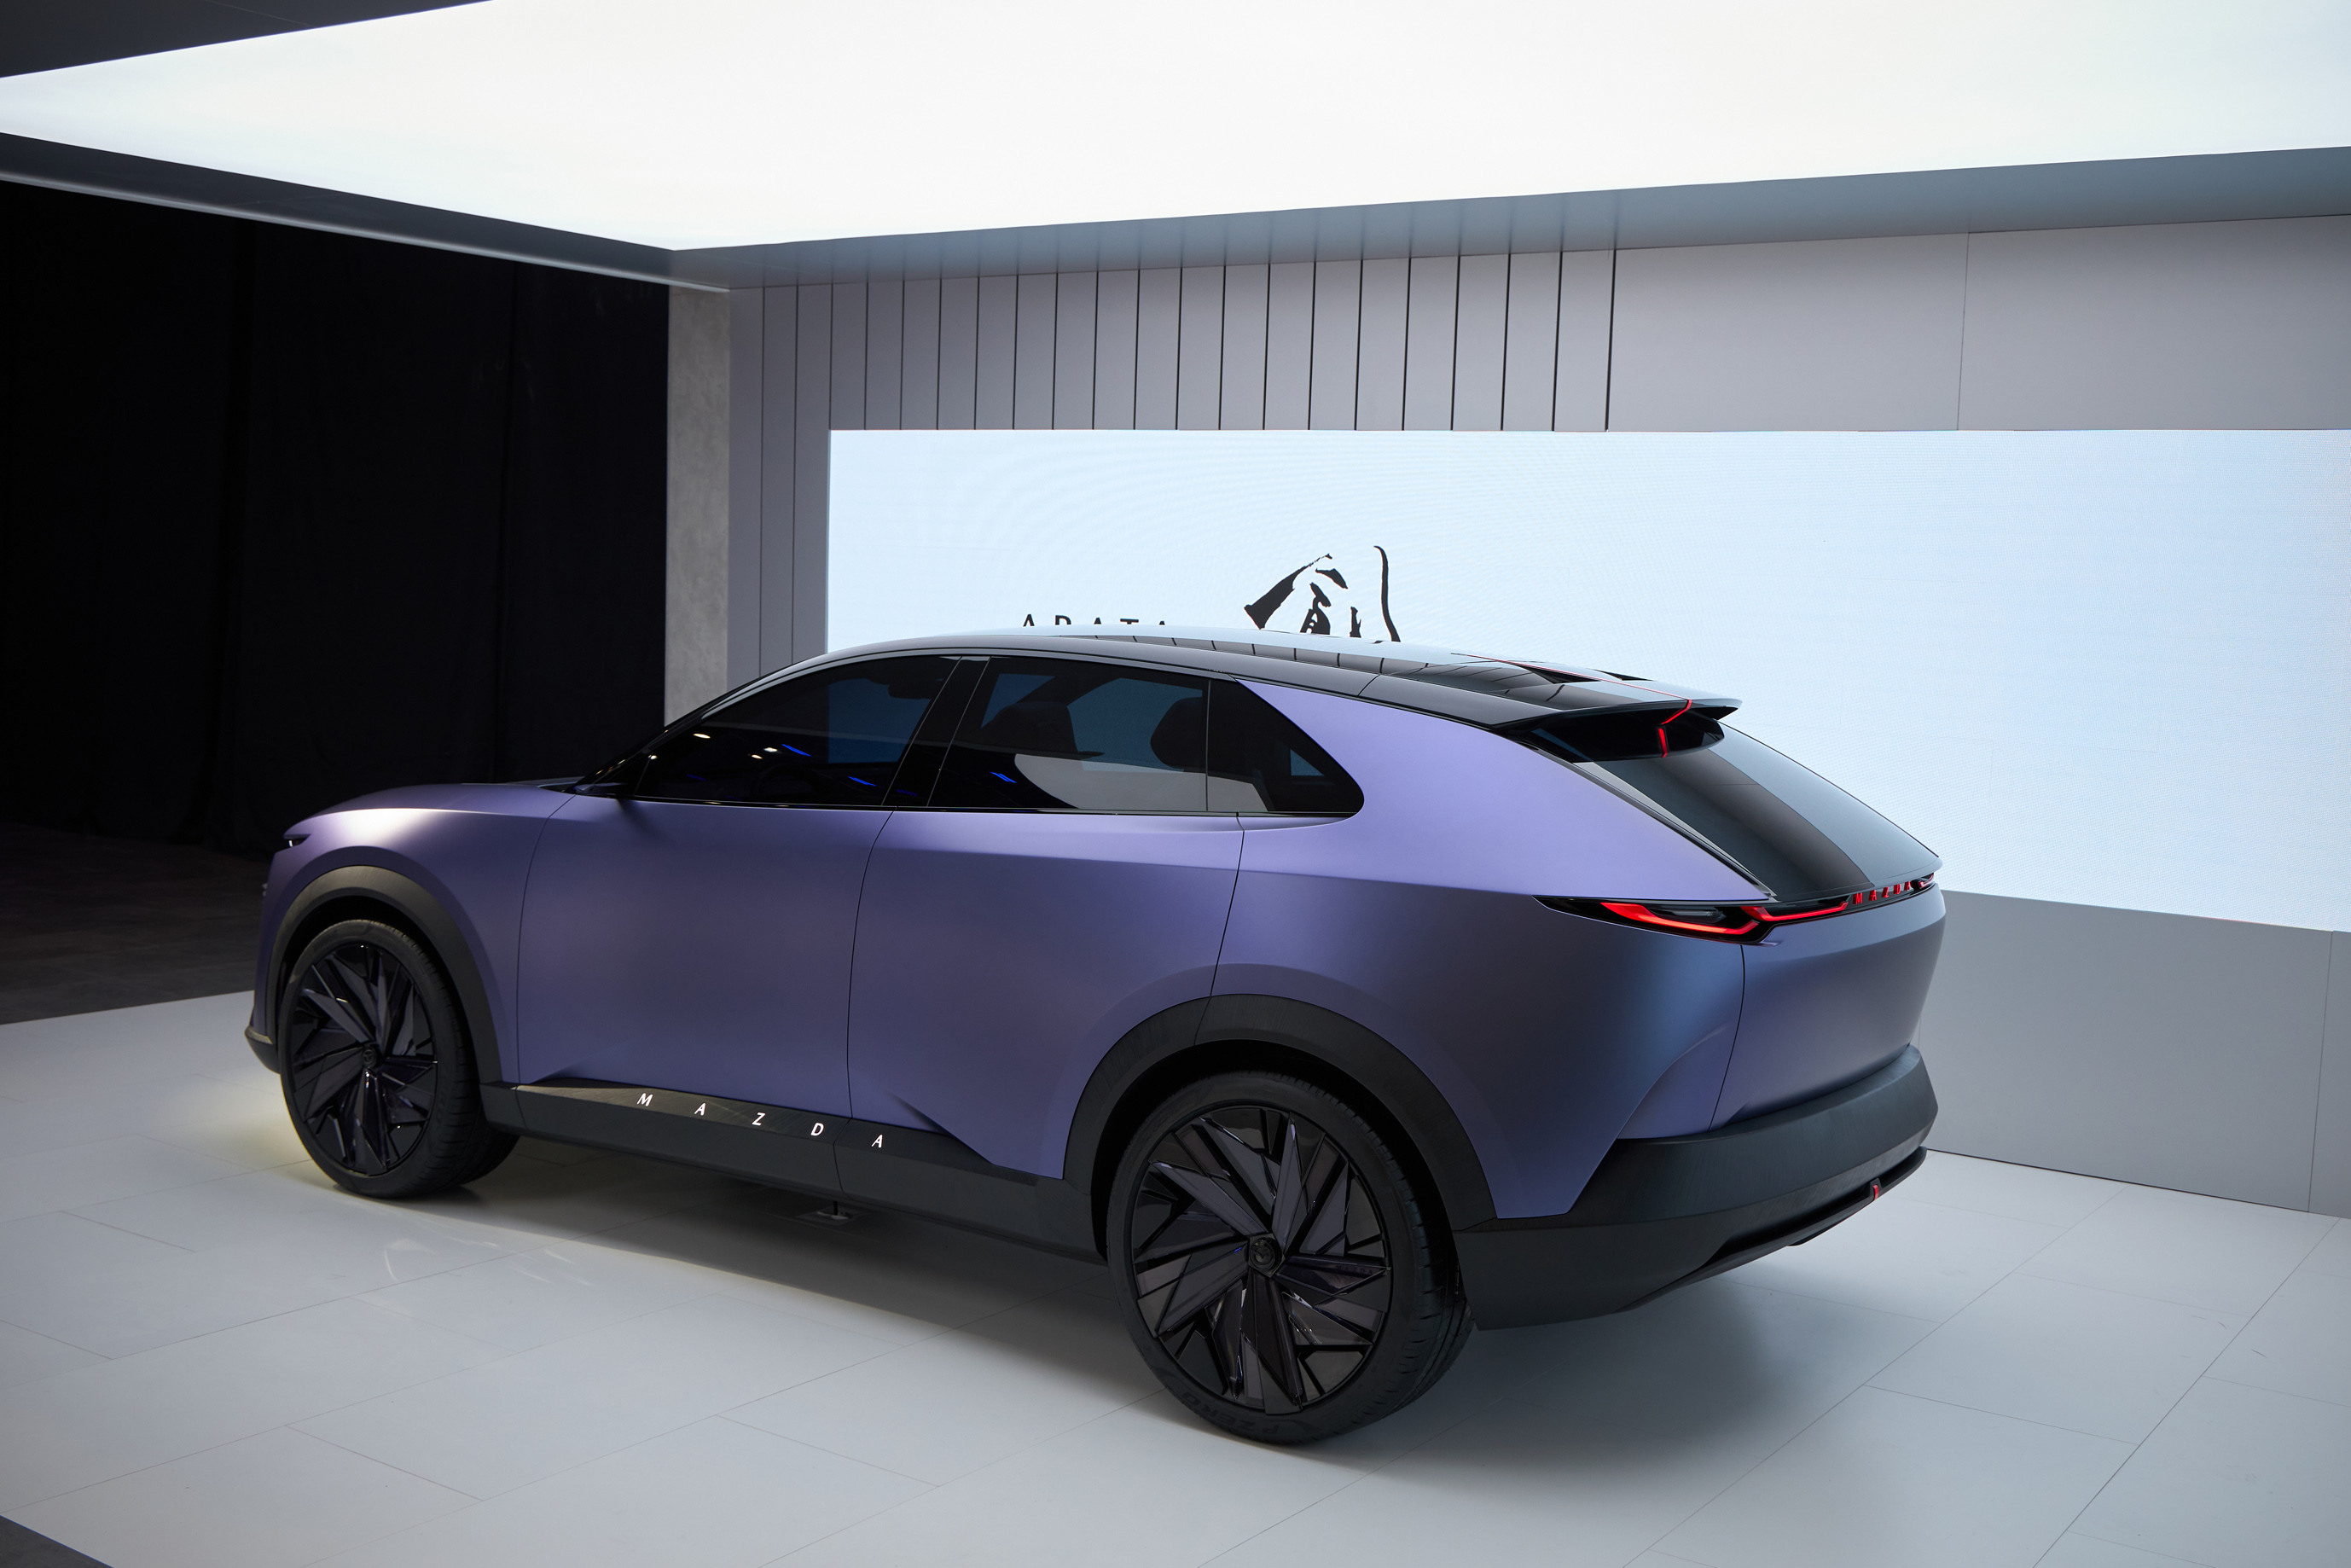 Mazda kündigt die elektrische Limousine EZ-6 und das Crossover-SUV-Konzept ARATA an